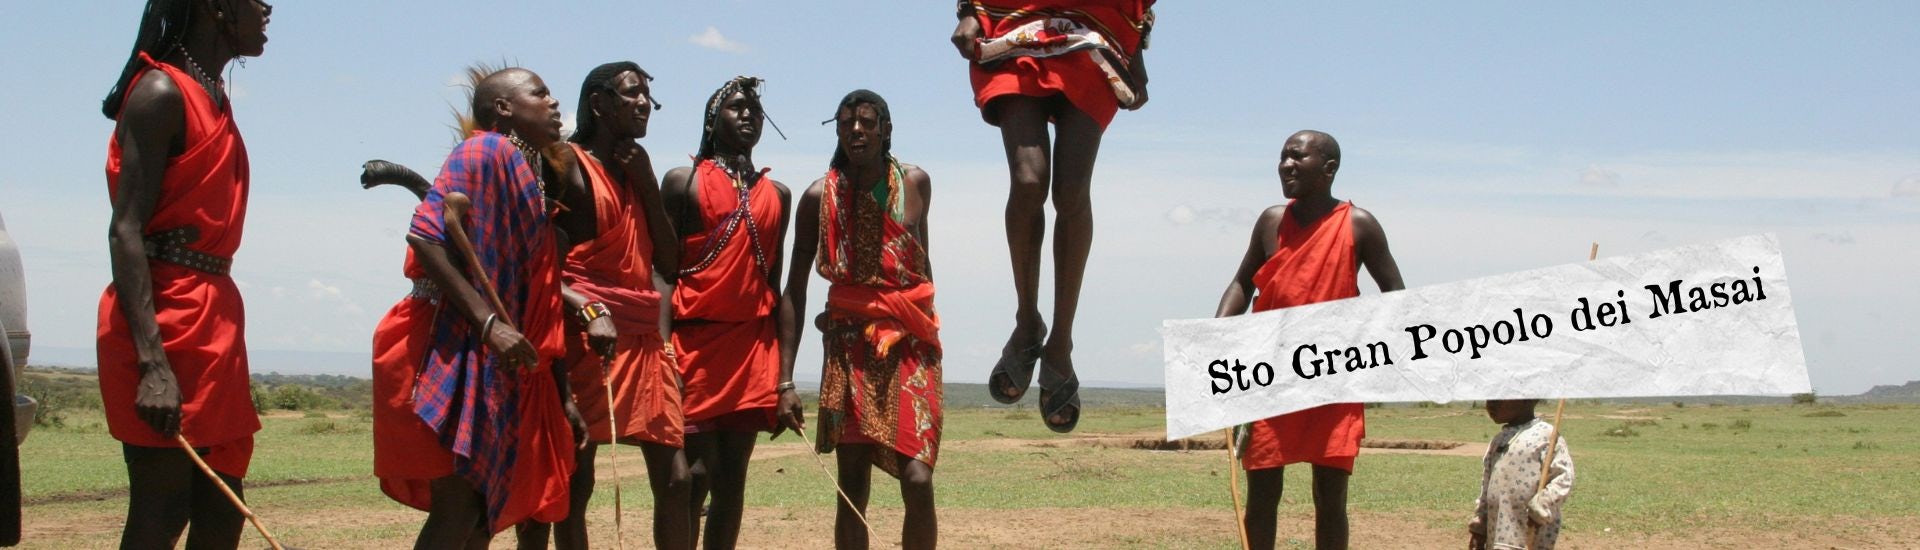 popolo masai larga